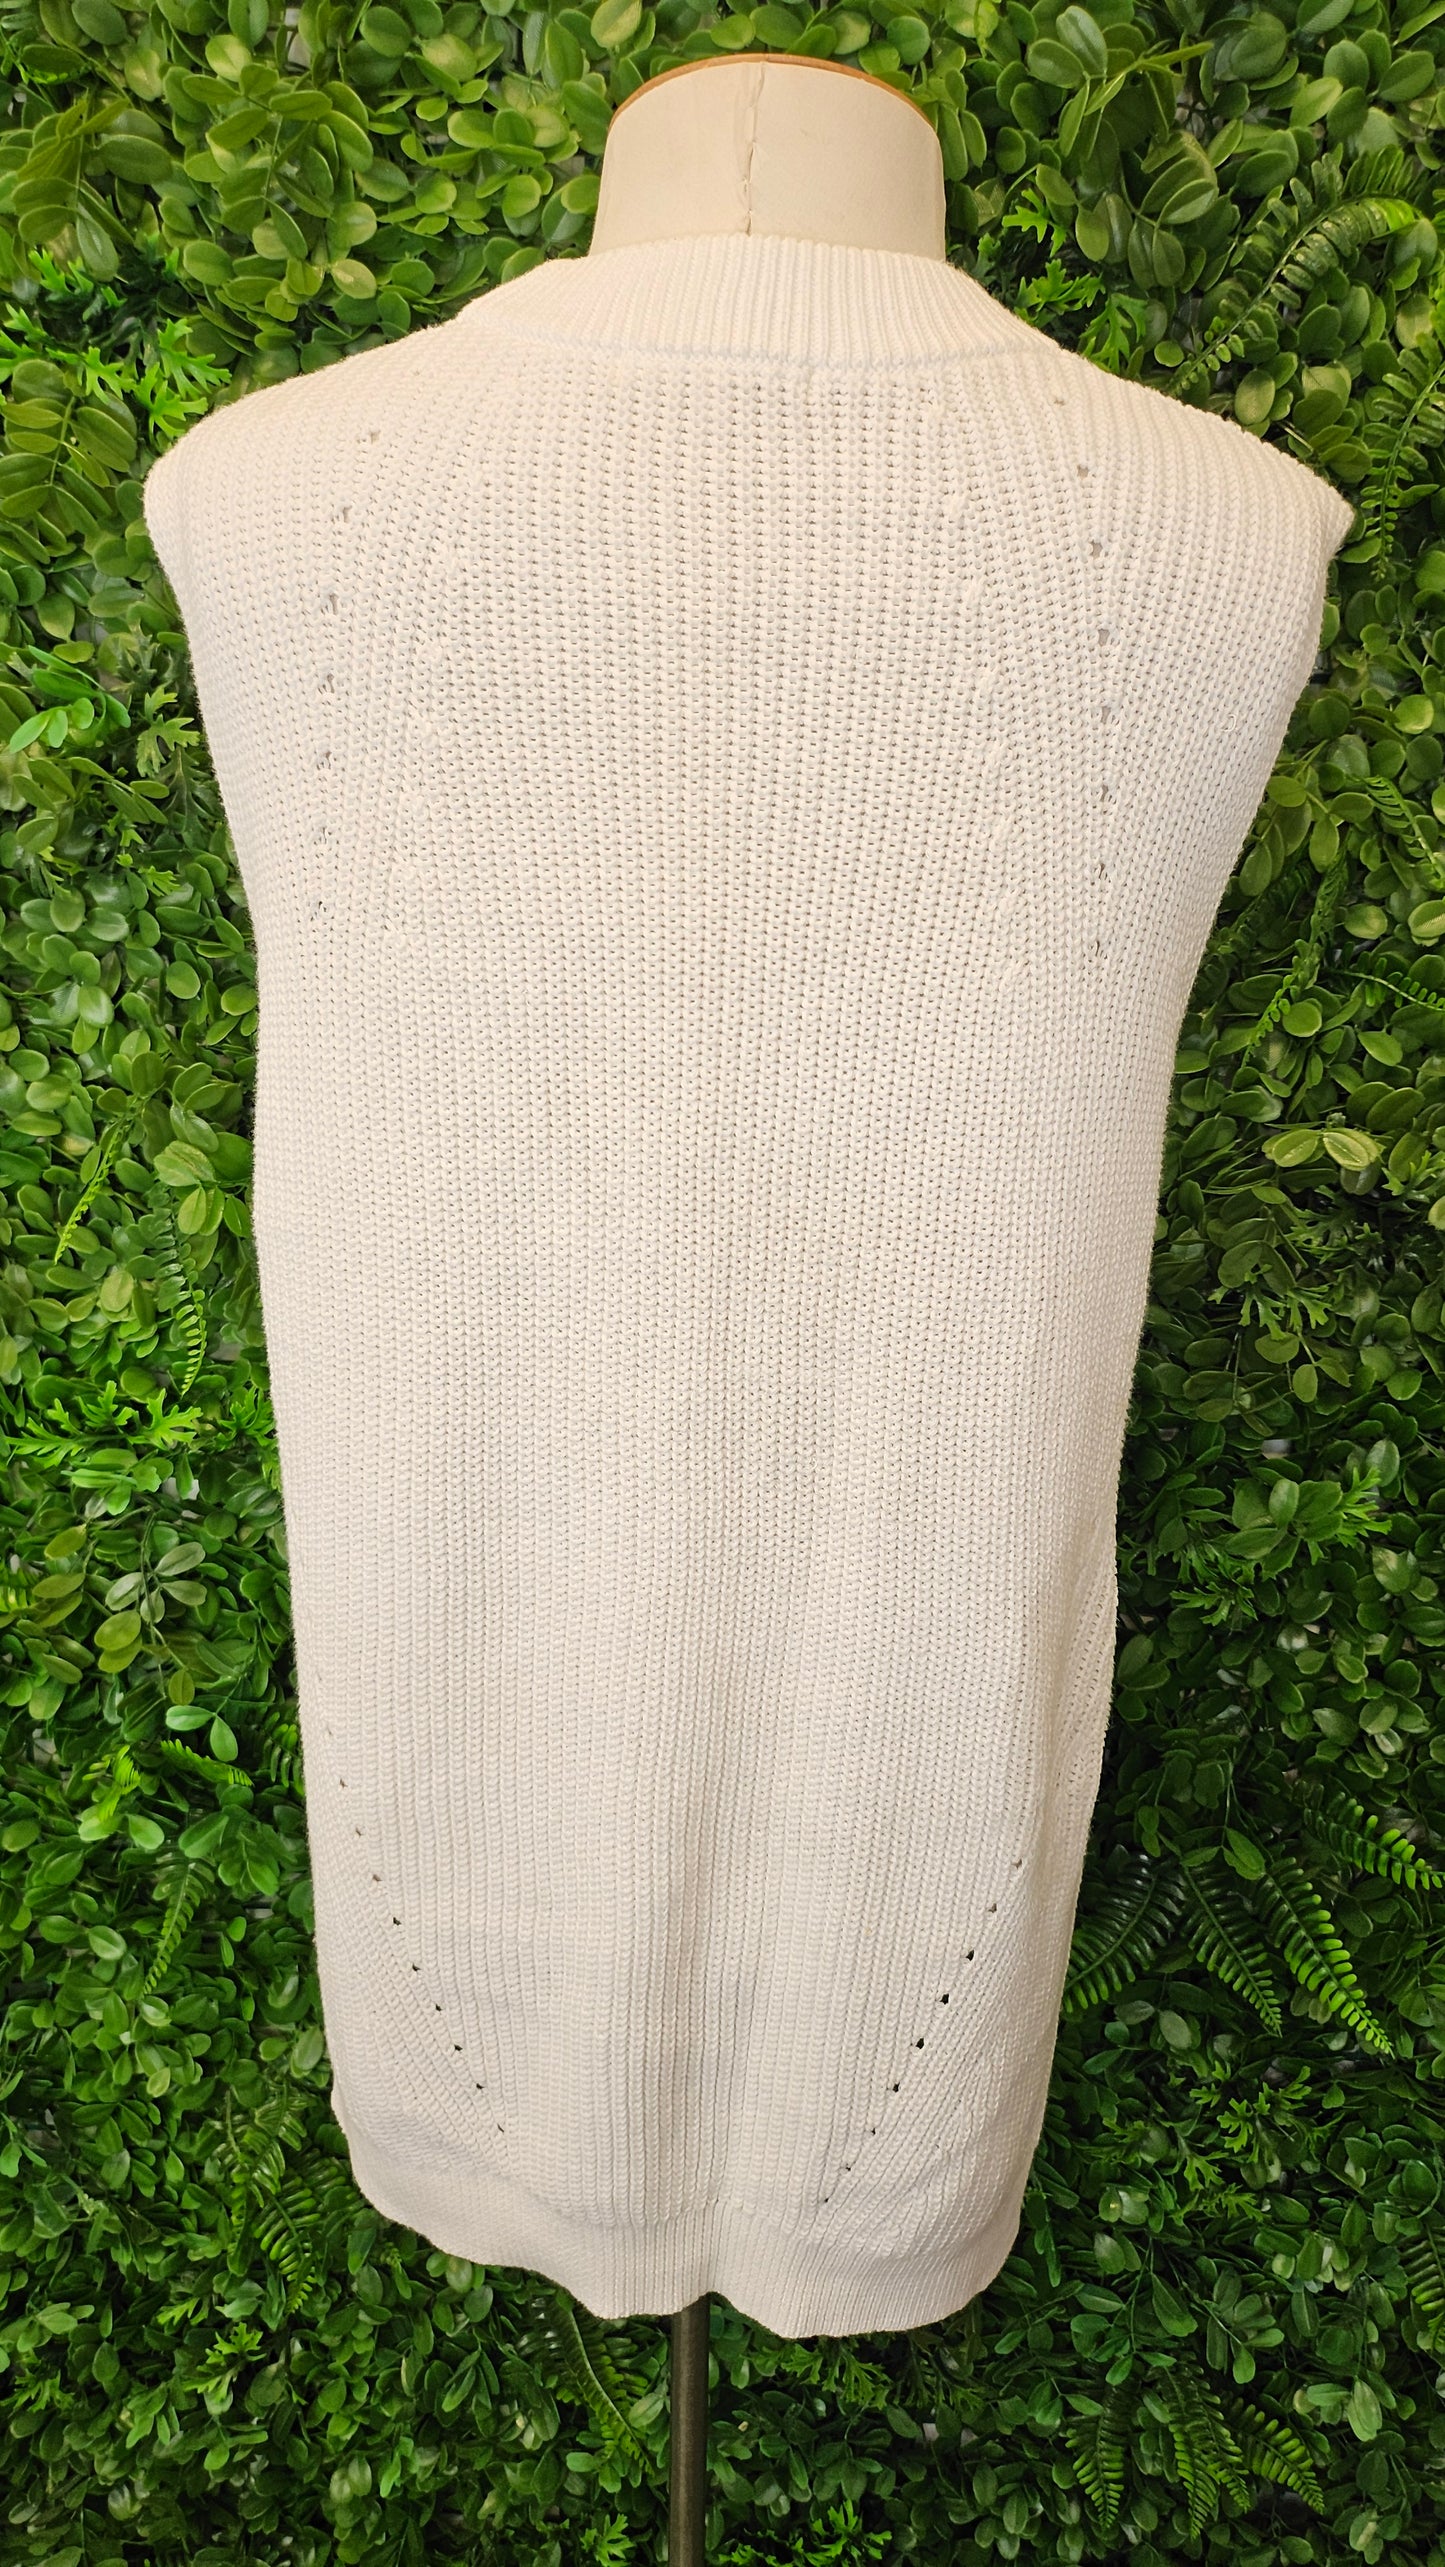 Uniqlo Ivory White Sleeveless Knit Vest (14)